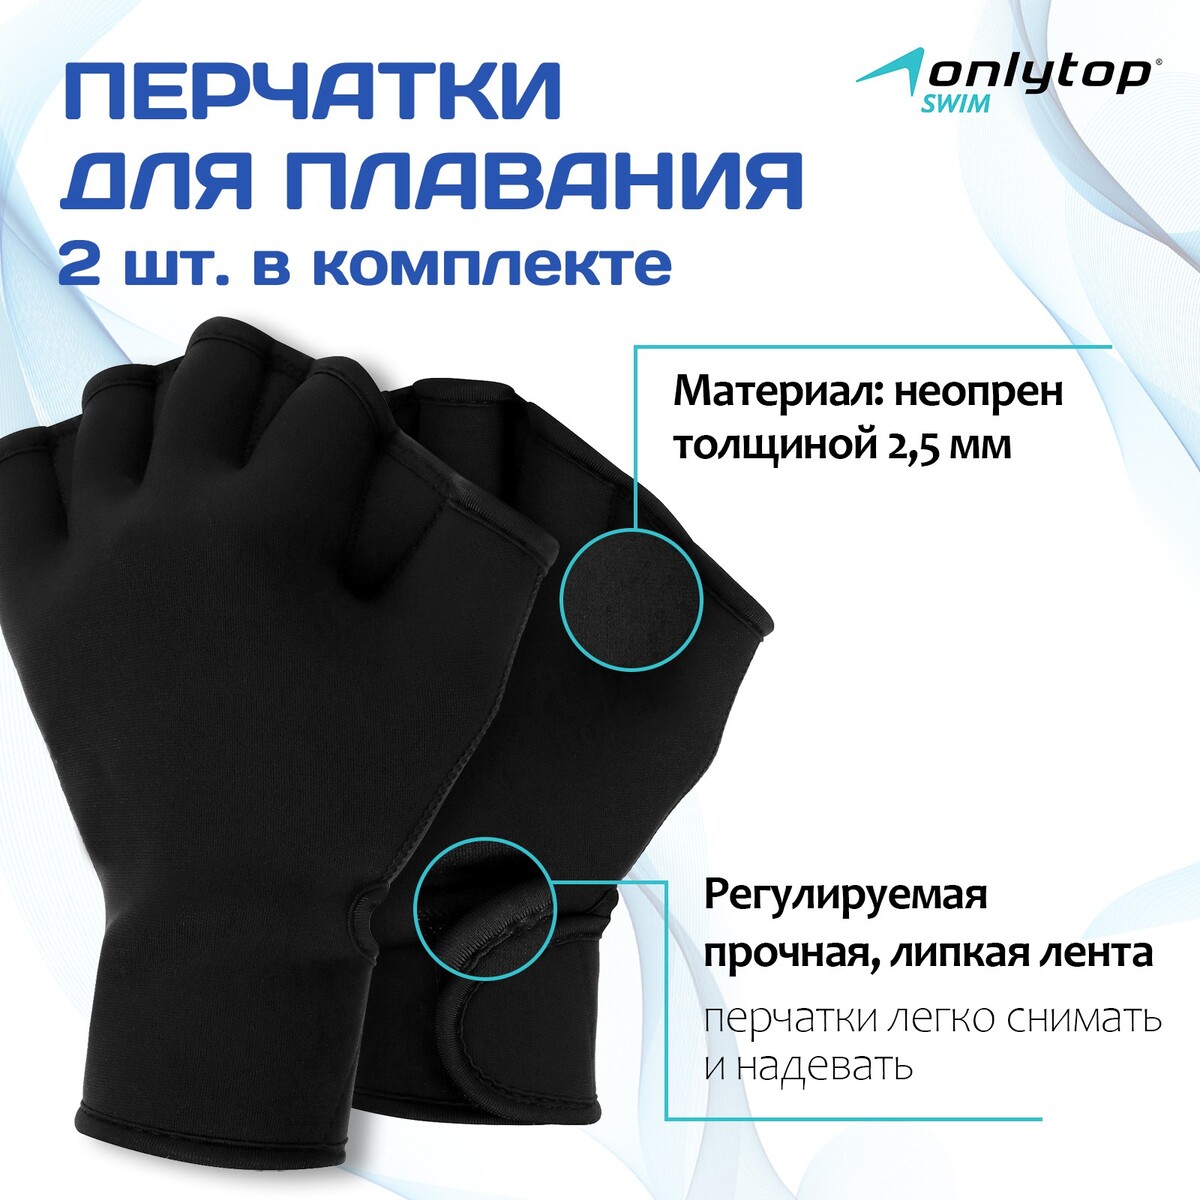 Перчатки для плавания onlytop, неопрен, 2.5 мм, р. s, цвет черный перчатки для плавания onlytop неопрен 2 5 мм р m